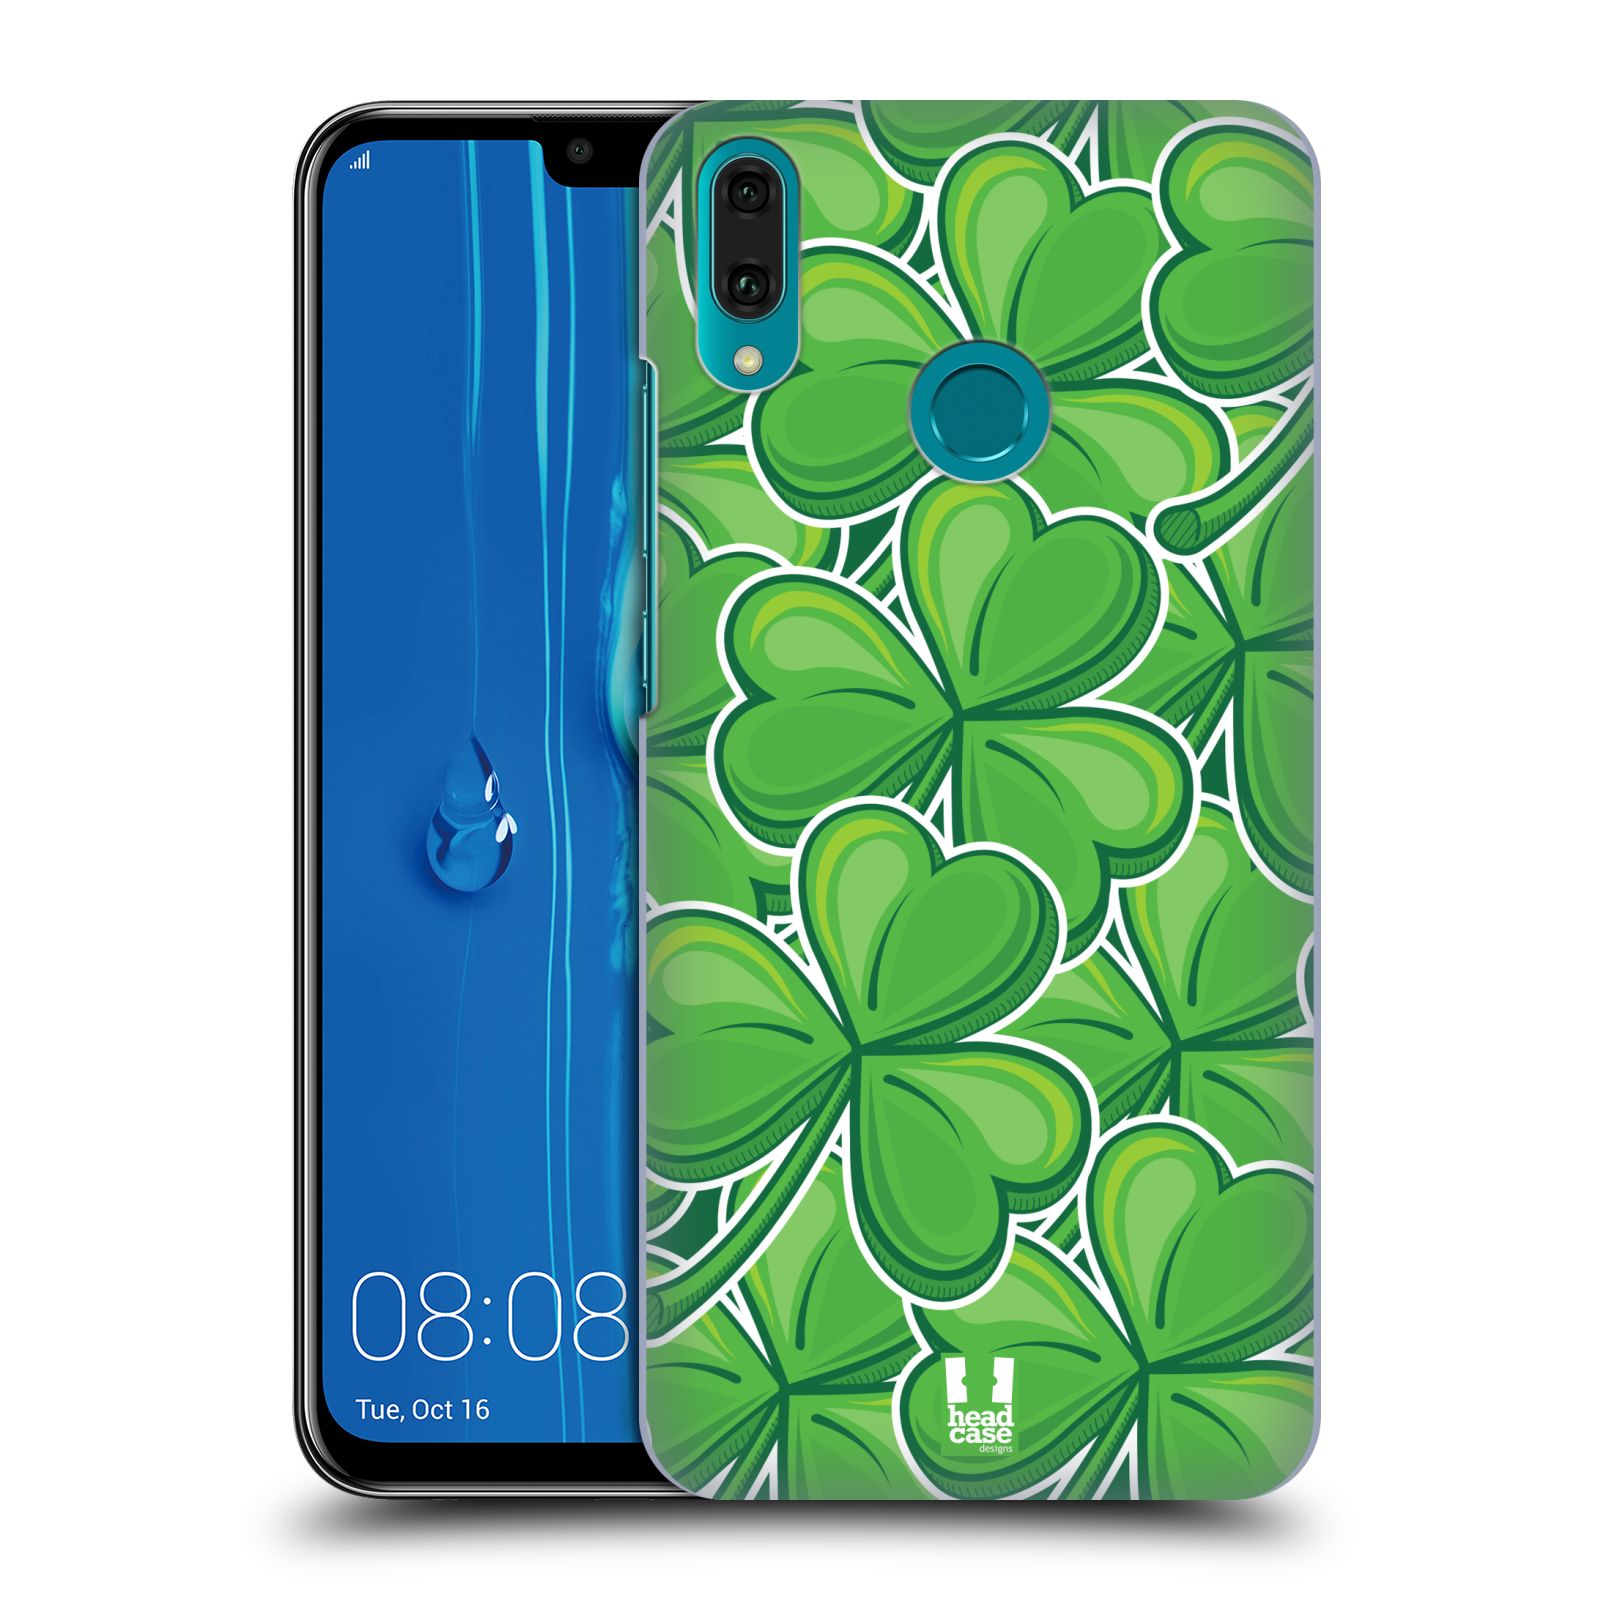 Pouzdro na mobil Huawei Y9 2019 - HEAD CASE - vzor Kreslený čyřlístek zelená VELKÉ LÍSTEČKY